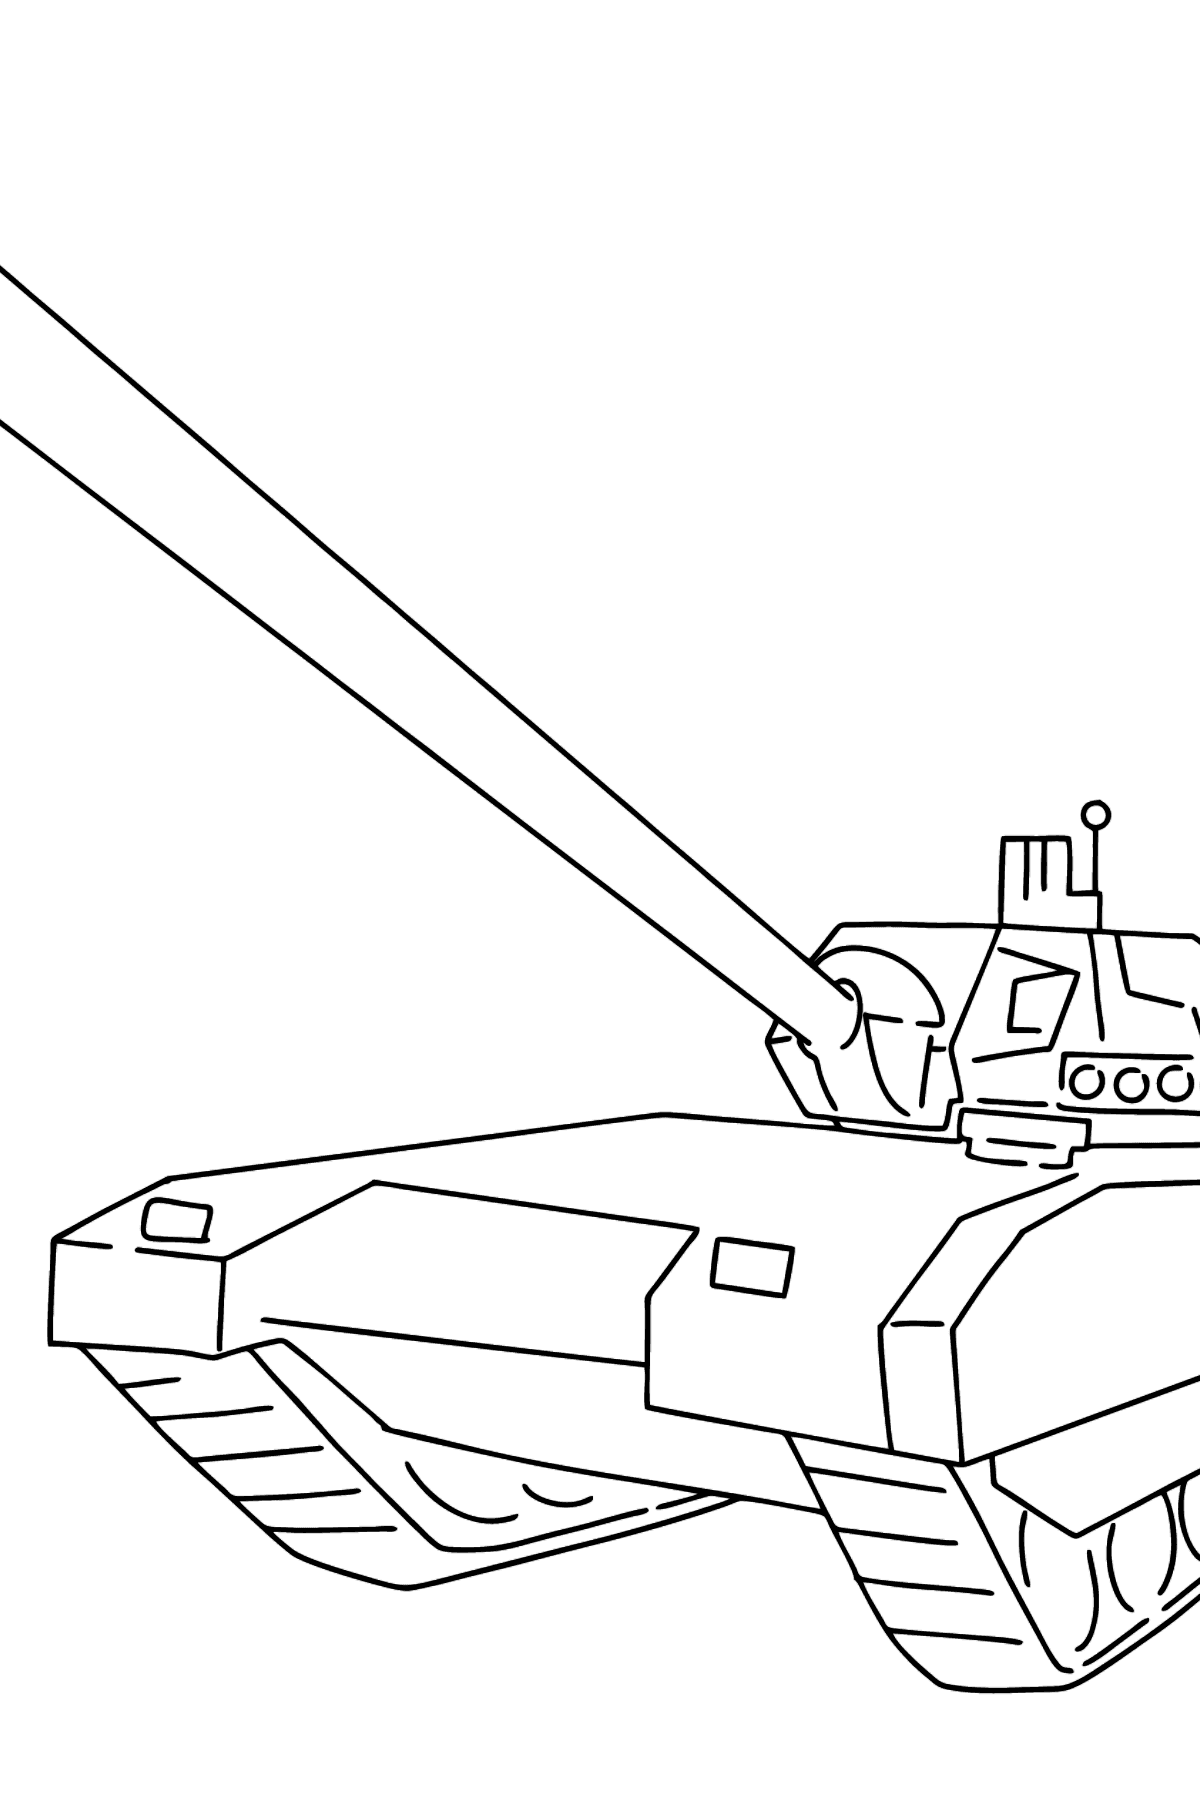 Tegning til fargelegging Armata tank - Tegninger til fargelegging for barn